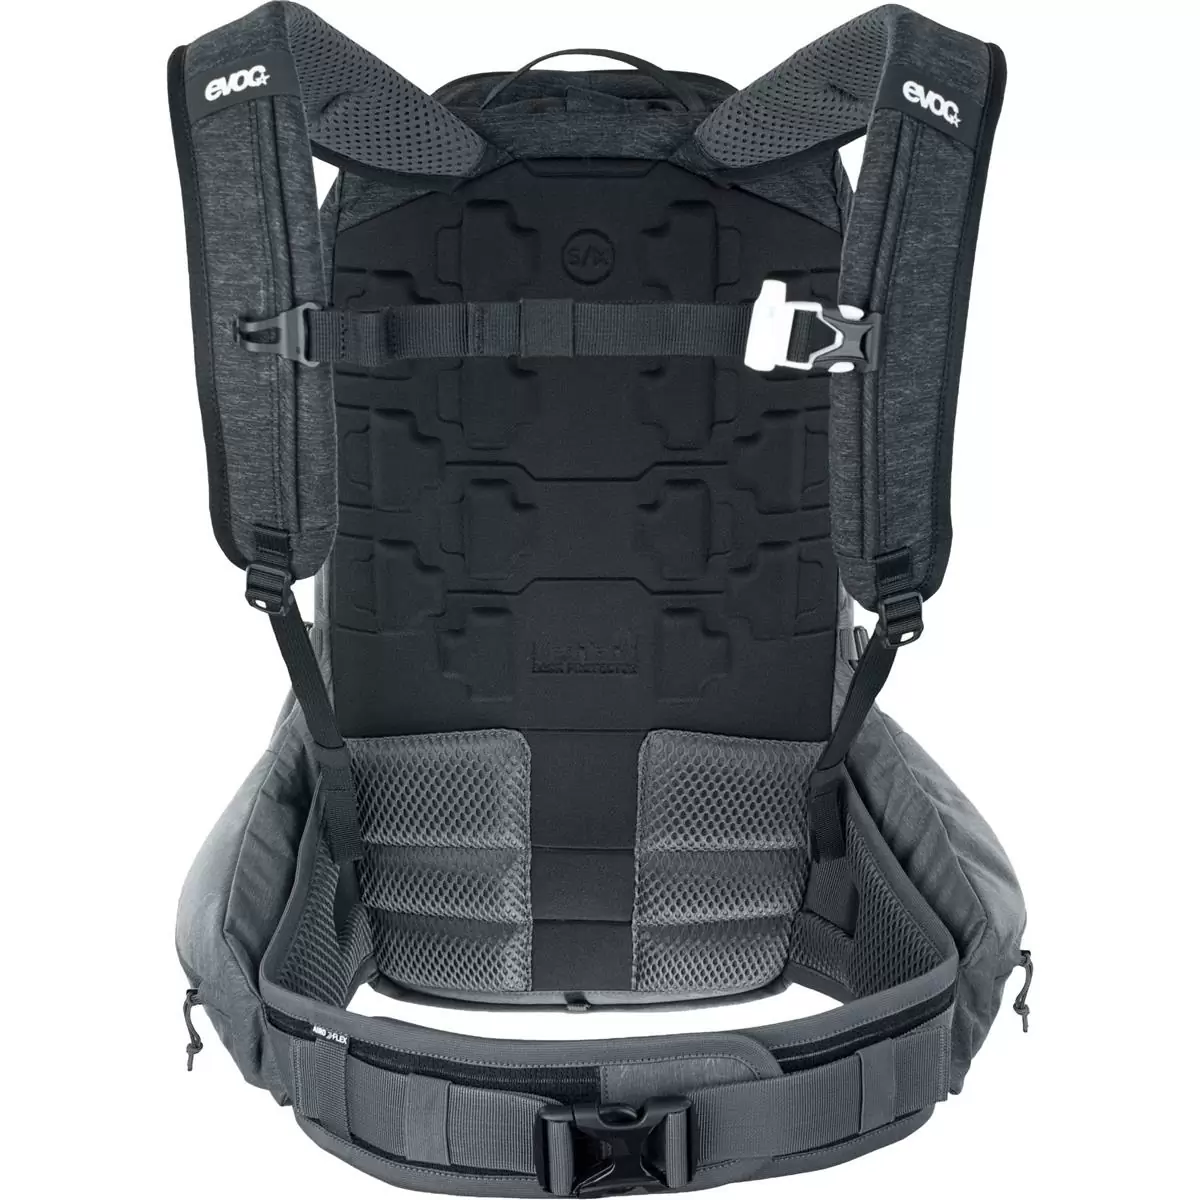 Trail Pro 26 Liter Rucksack schwarz - Carbongrau mit Rückenprotektor Größe L/XL #1